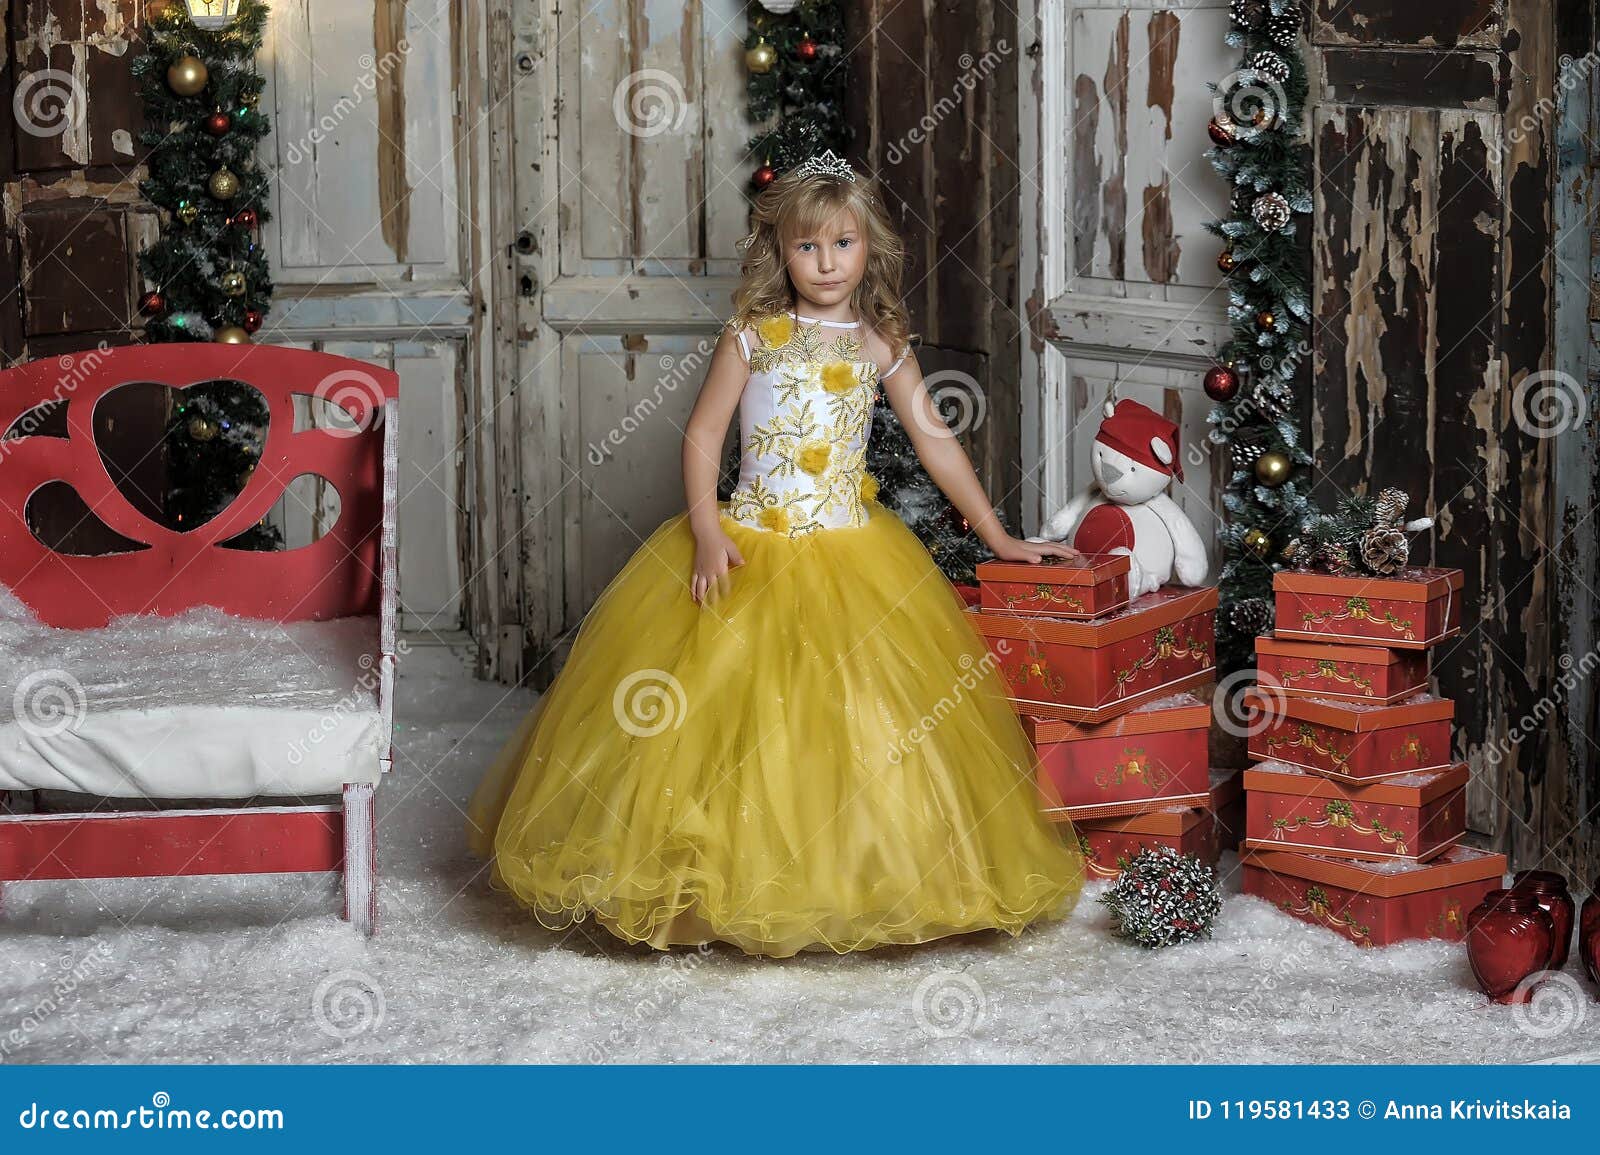 Discreto posponer Modernización Princesa Joven En Un Vestido Elegante En La Navidad Imagen de archivo -  Imagen de familia, vacaciones: 119581433